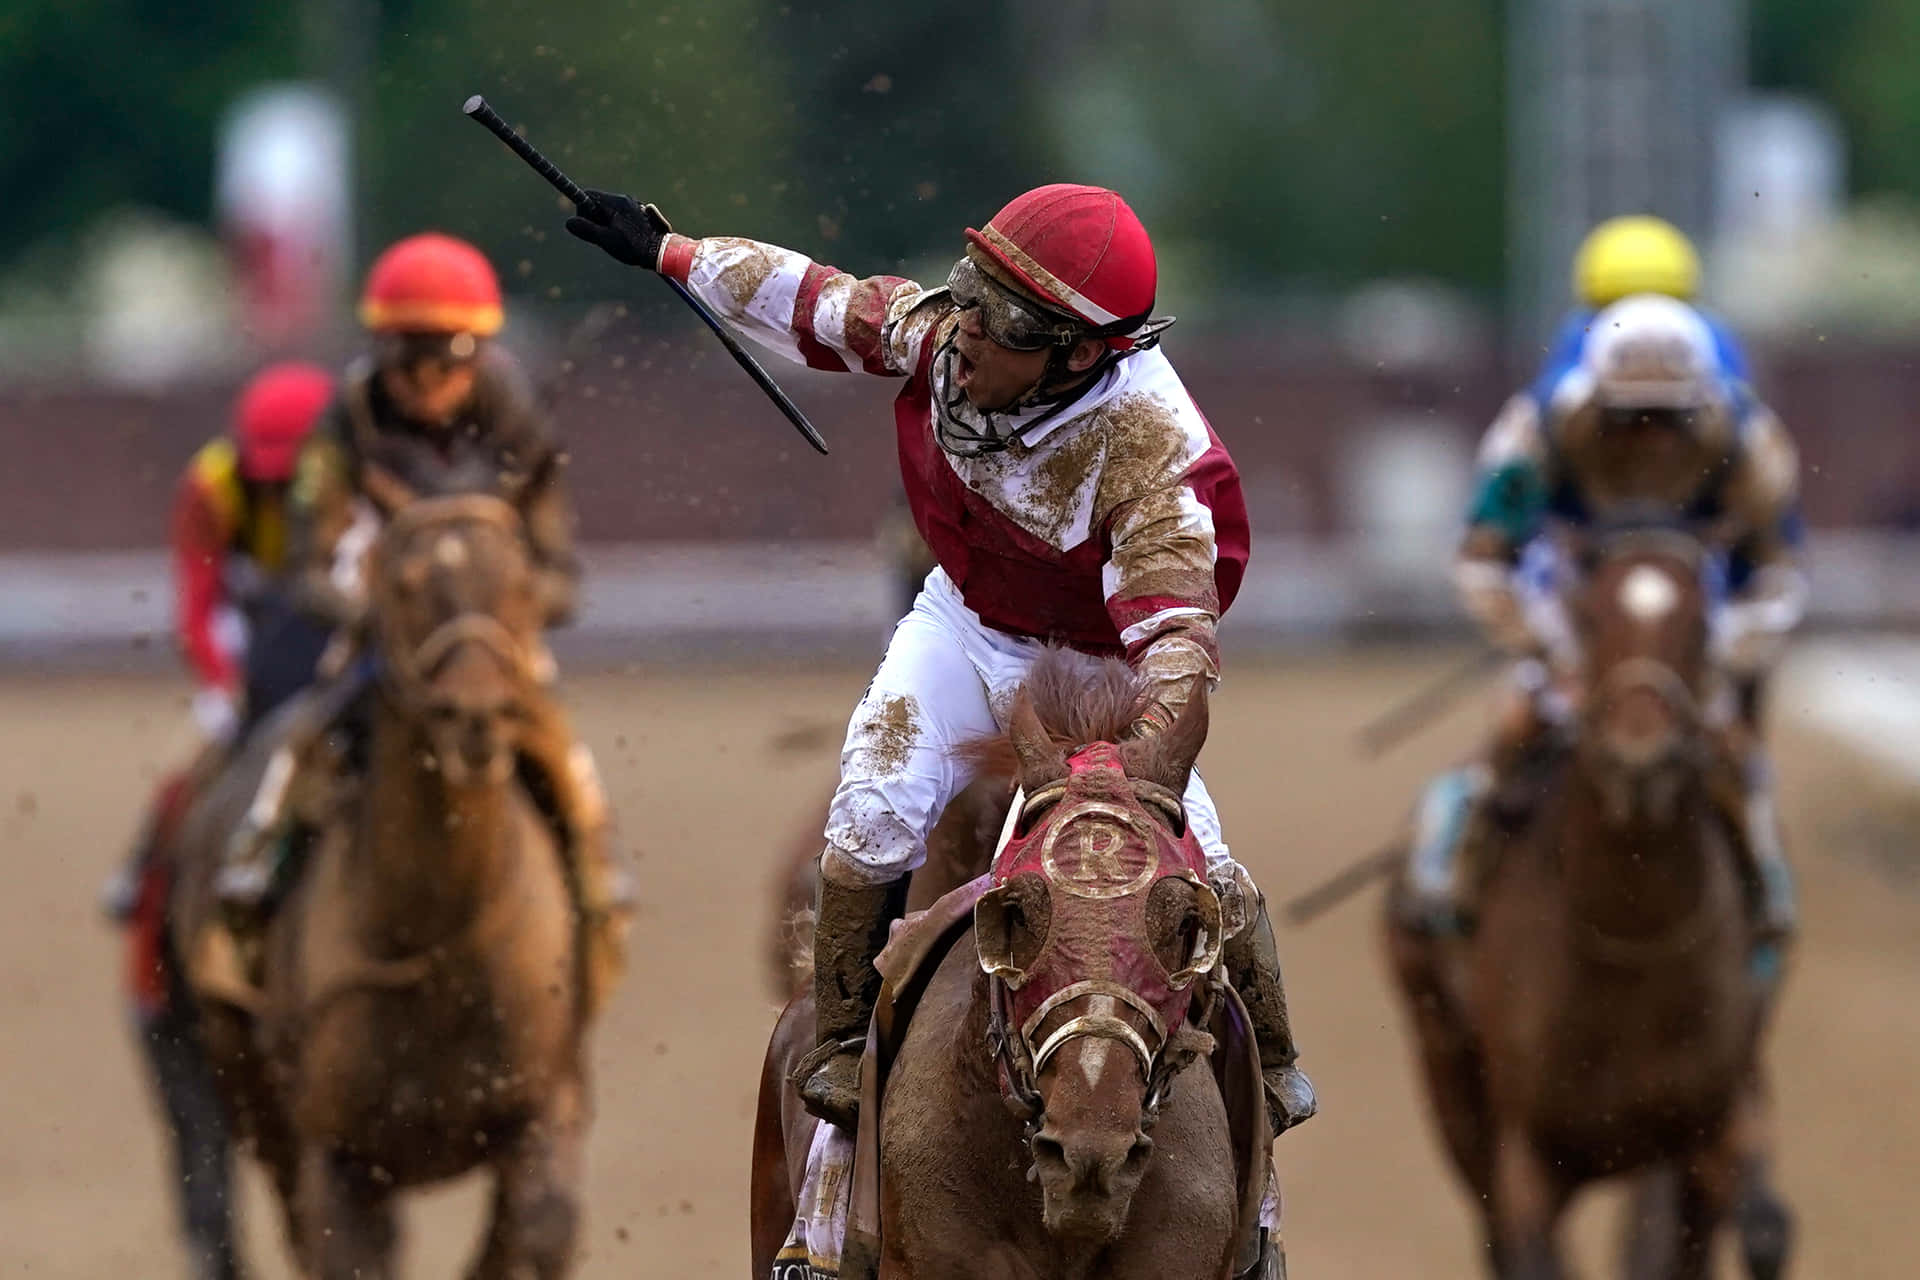 Enjockey Rider På En Häst I En Tävling.